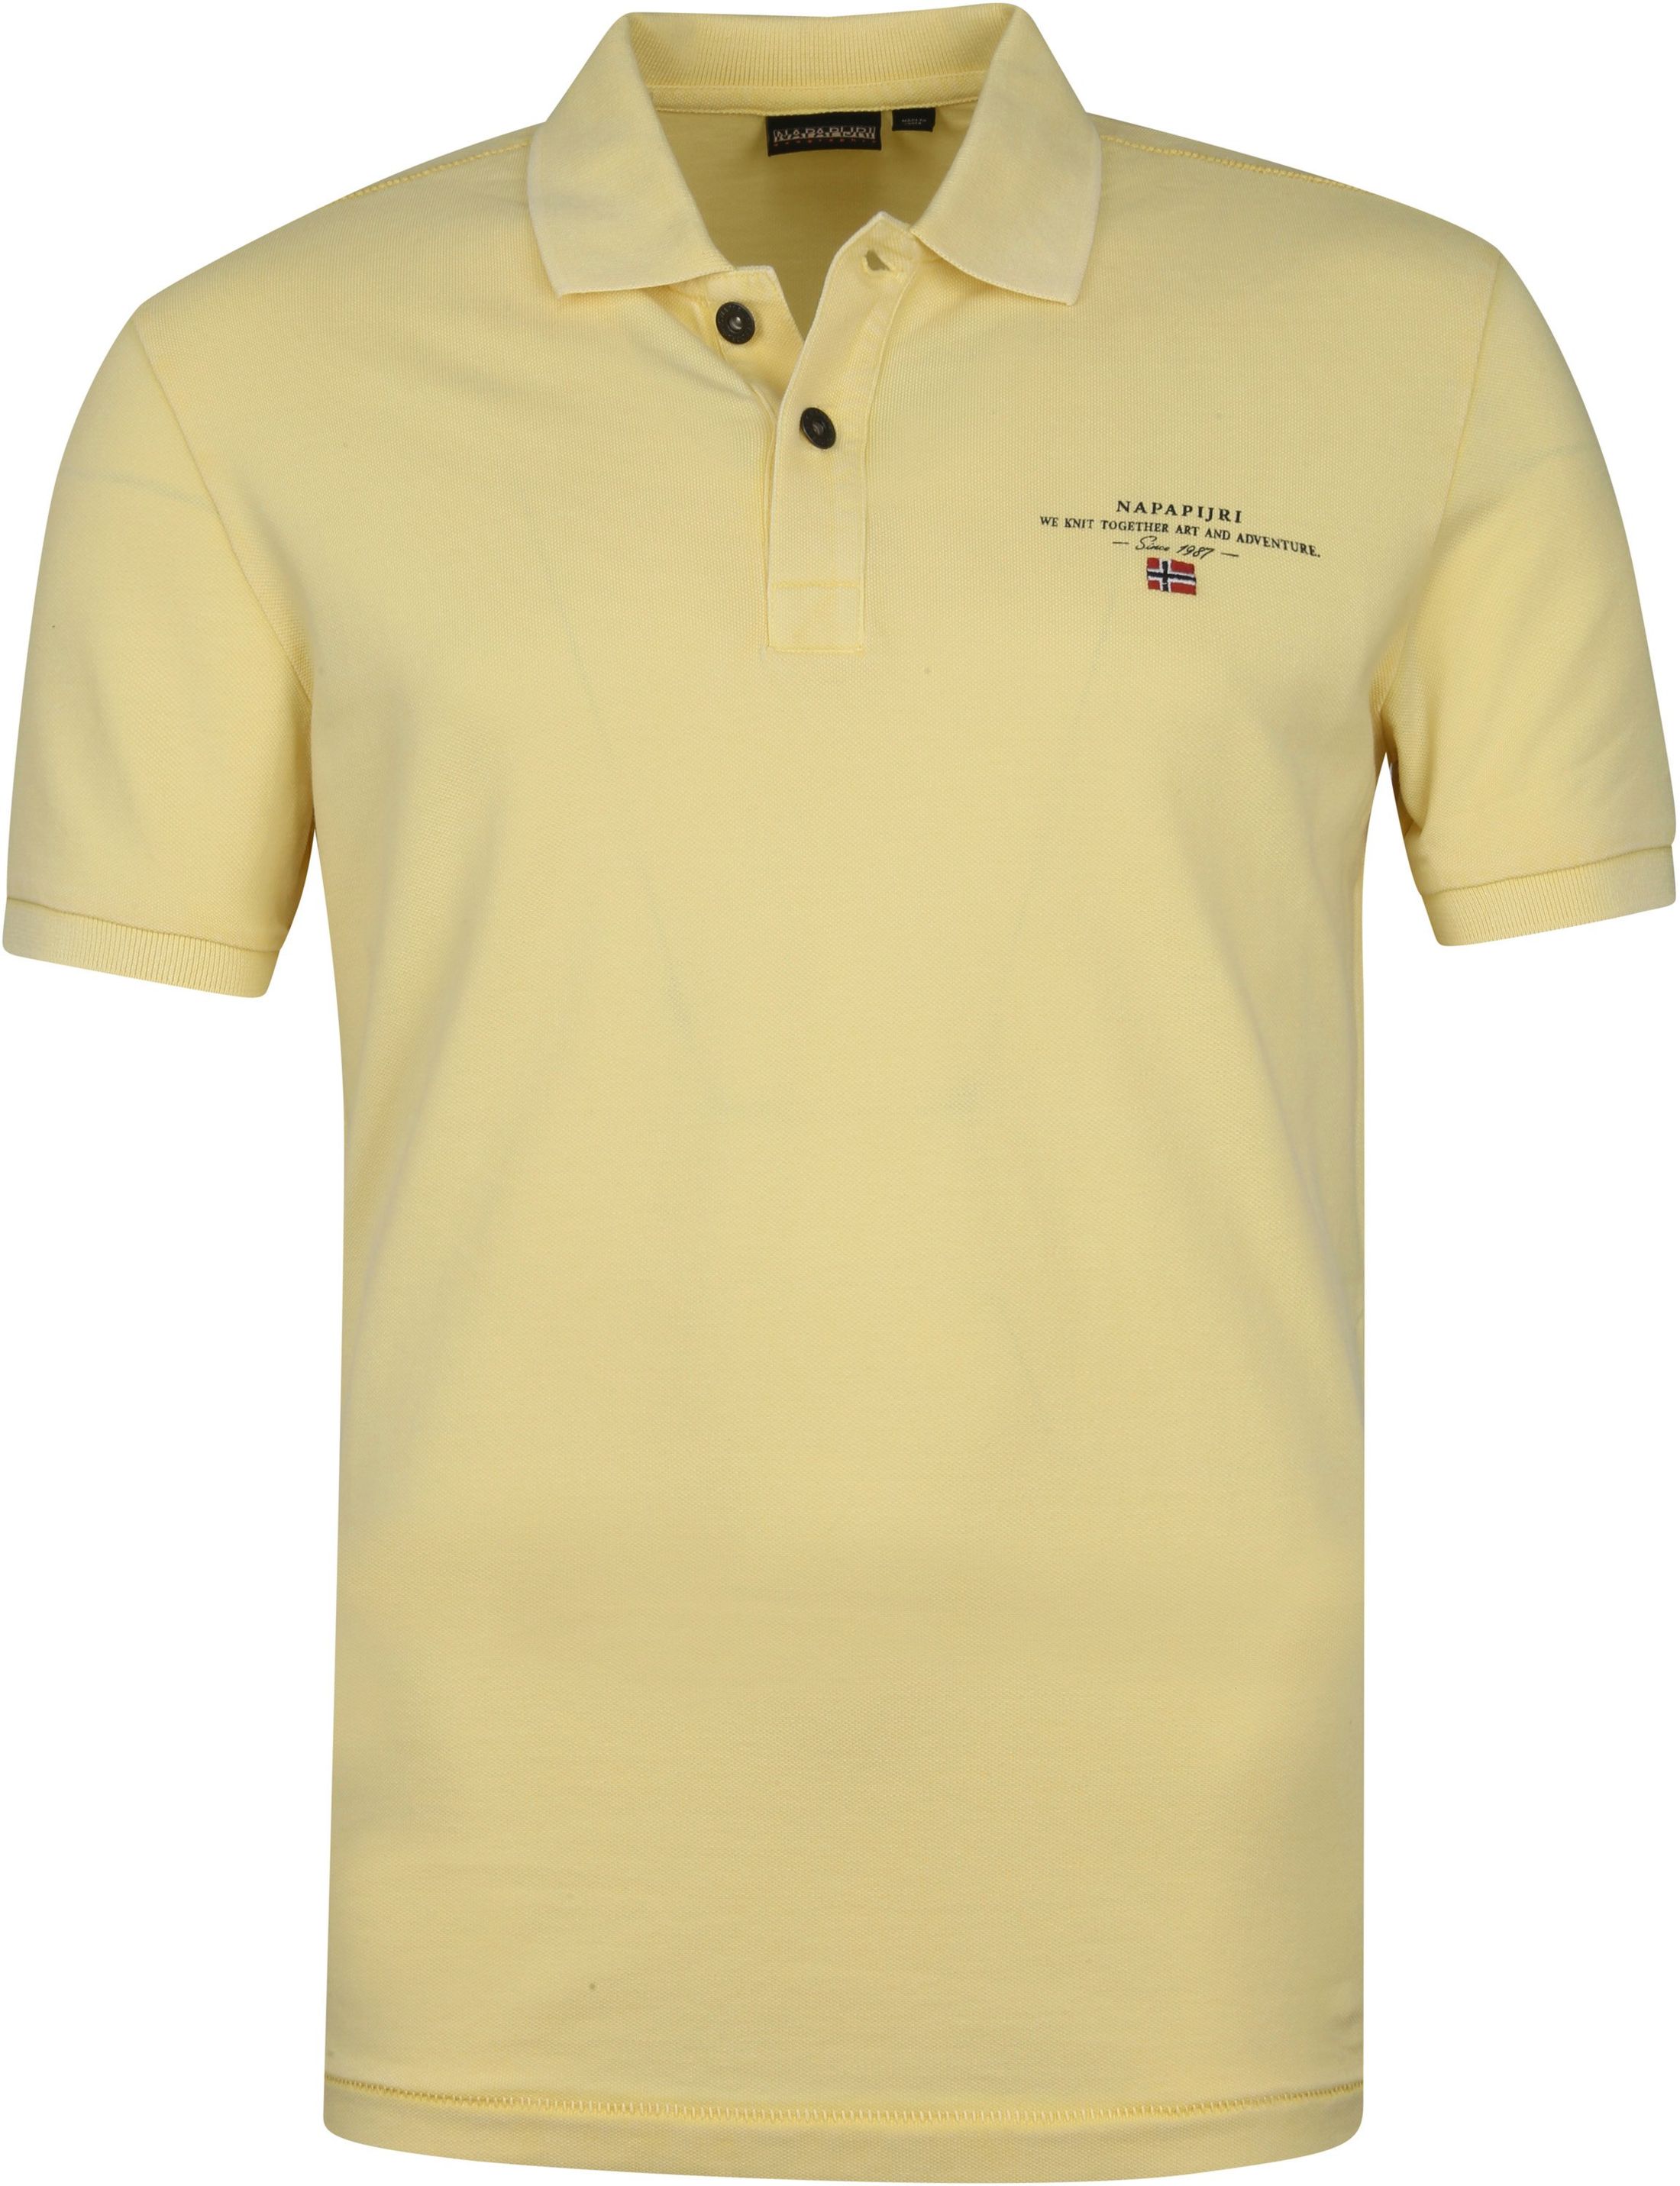 Napapijri Elbas Polo Shirt Yellow size L